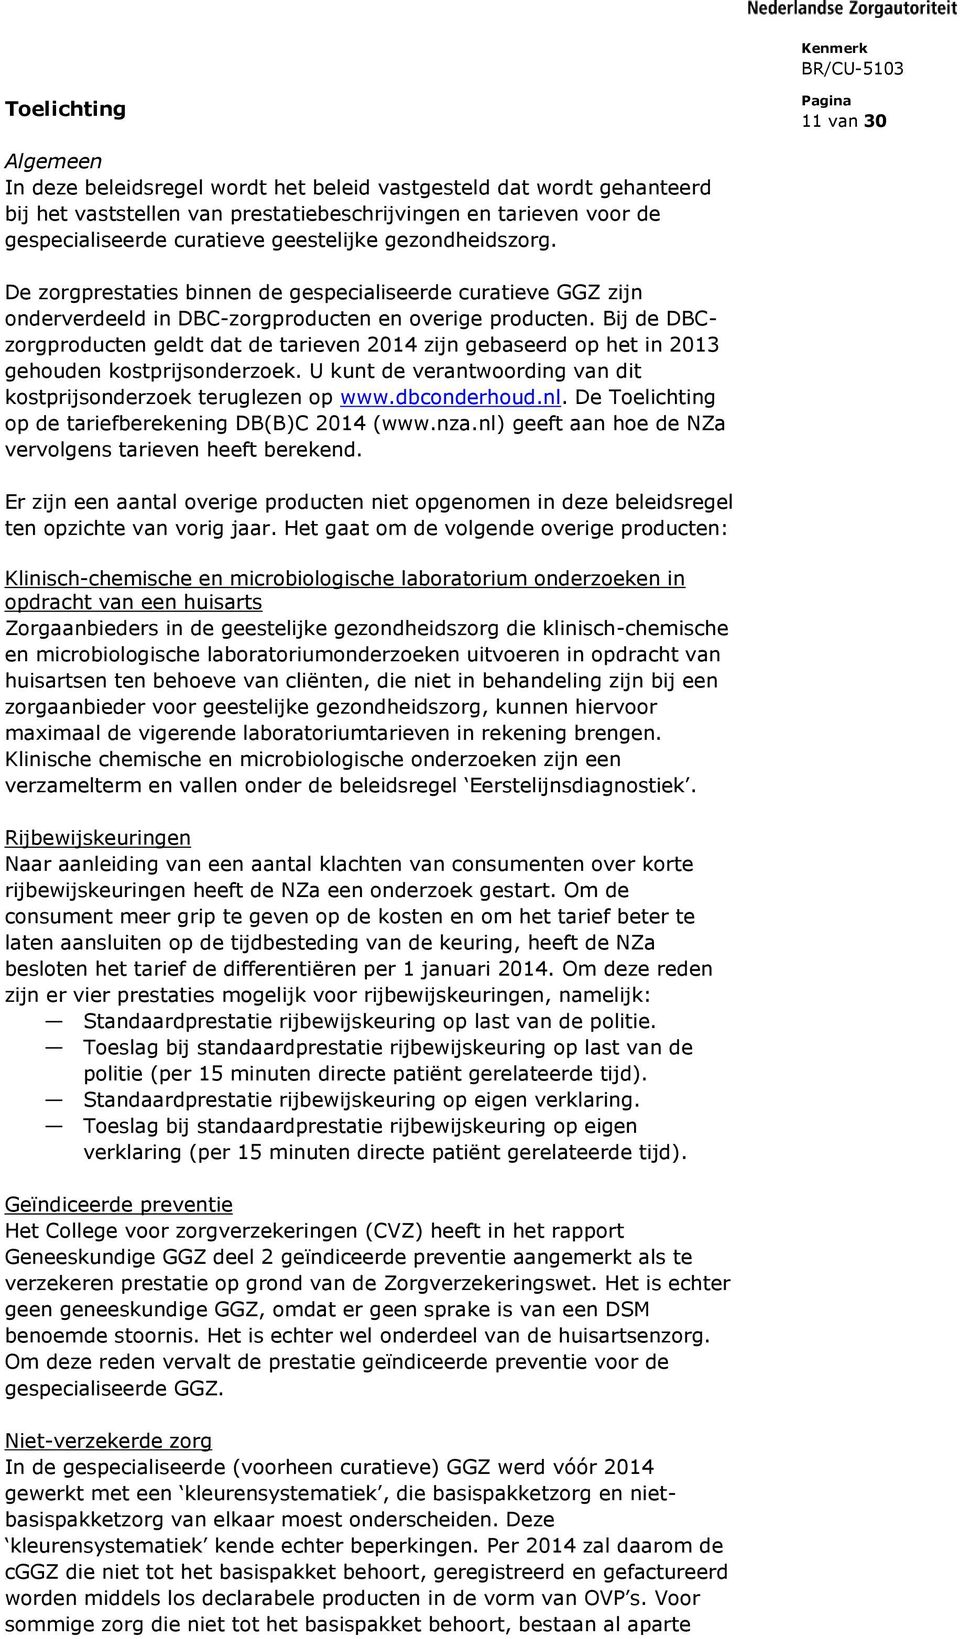 Bij de DBCzorgproducten geldt dat de tarieven 2014 zijn gebaseerd op het in 2013 gehouden kostprijsonderzoek. U kunt de verantwoording van dit kostprijsonderzoek teruglezen op www.dbconderhoud.nl.